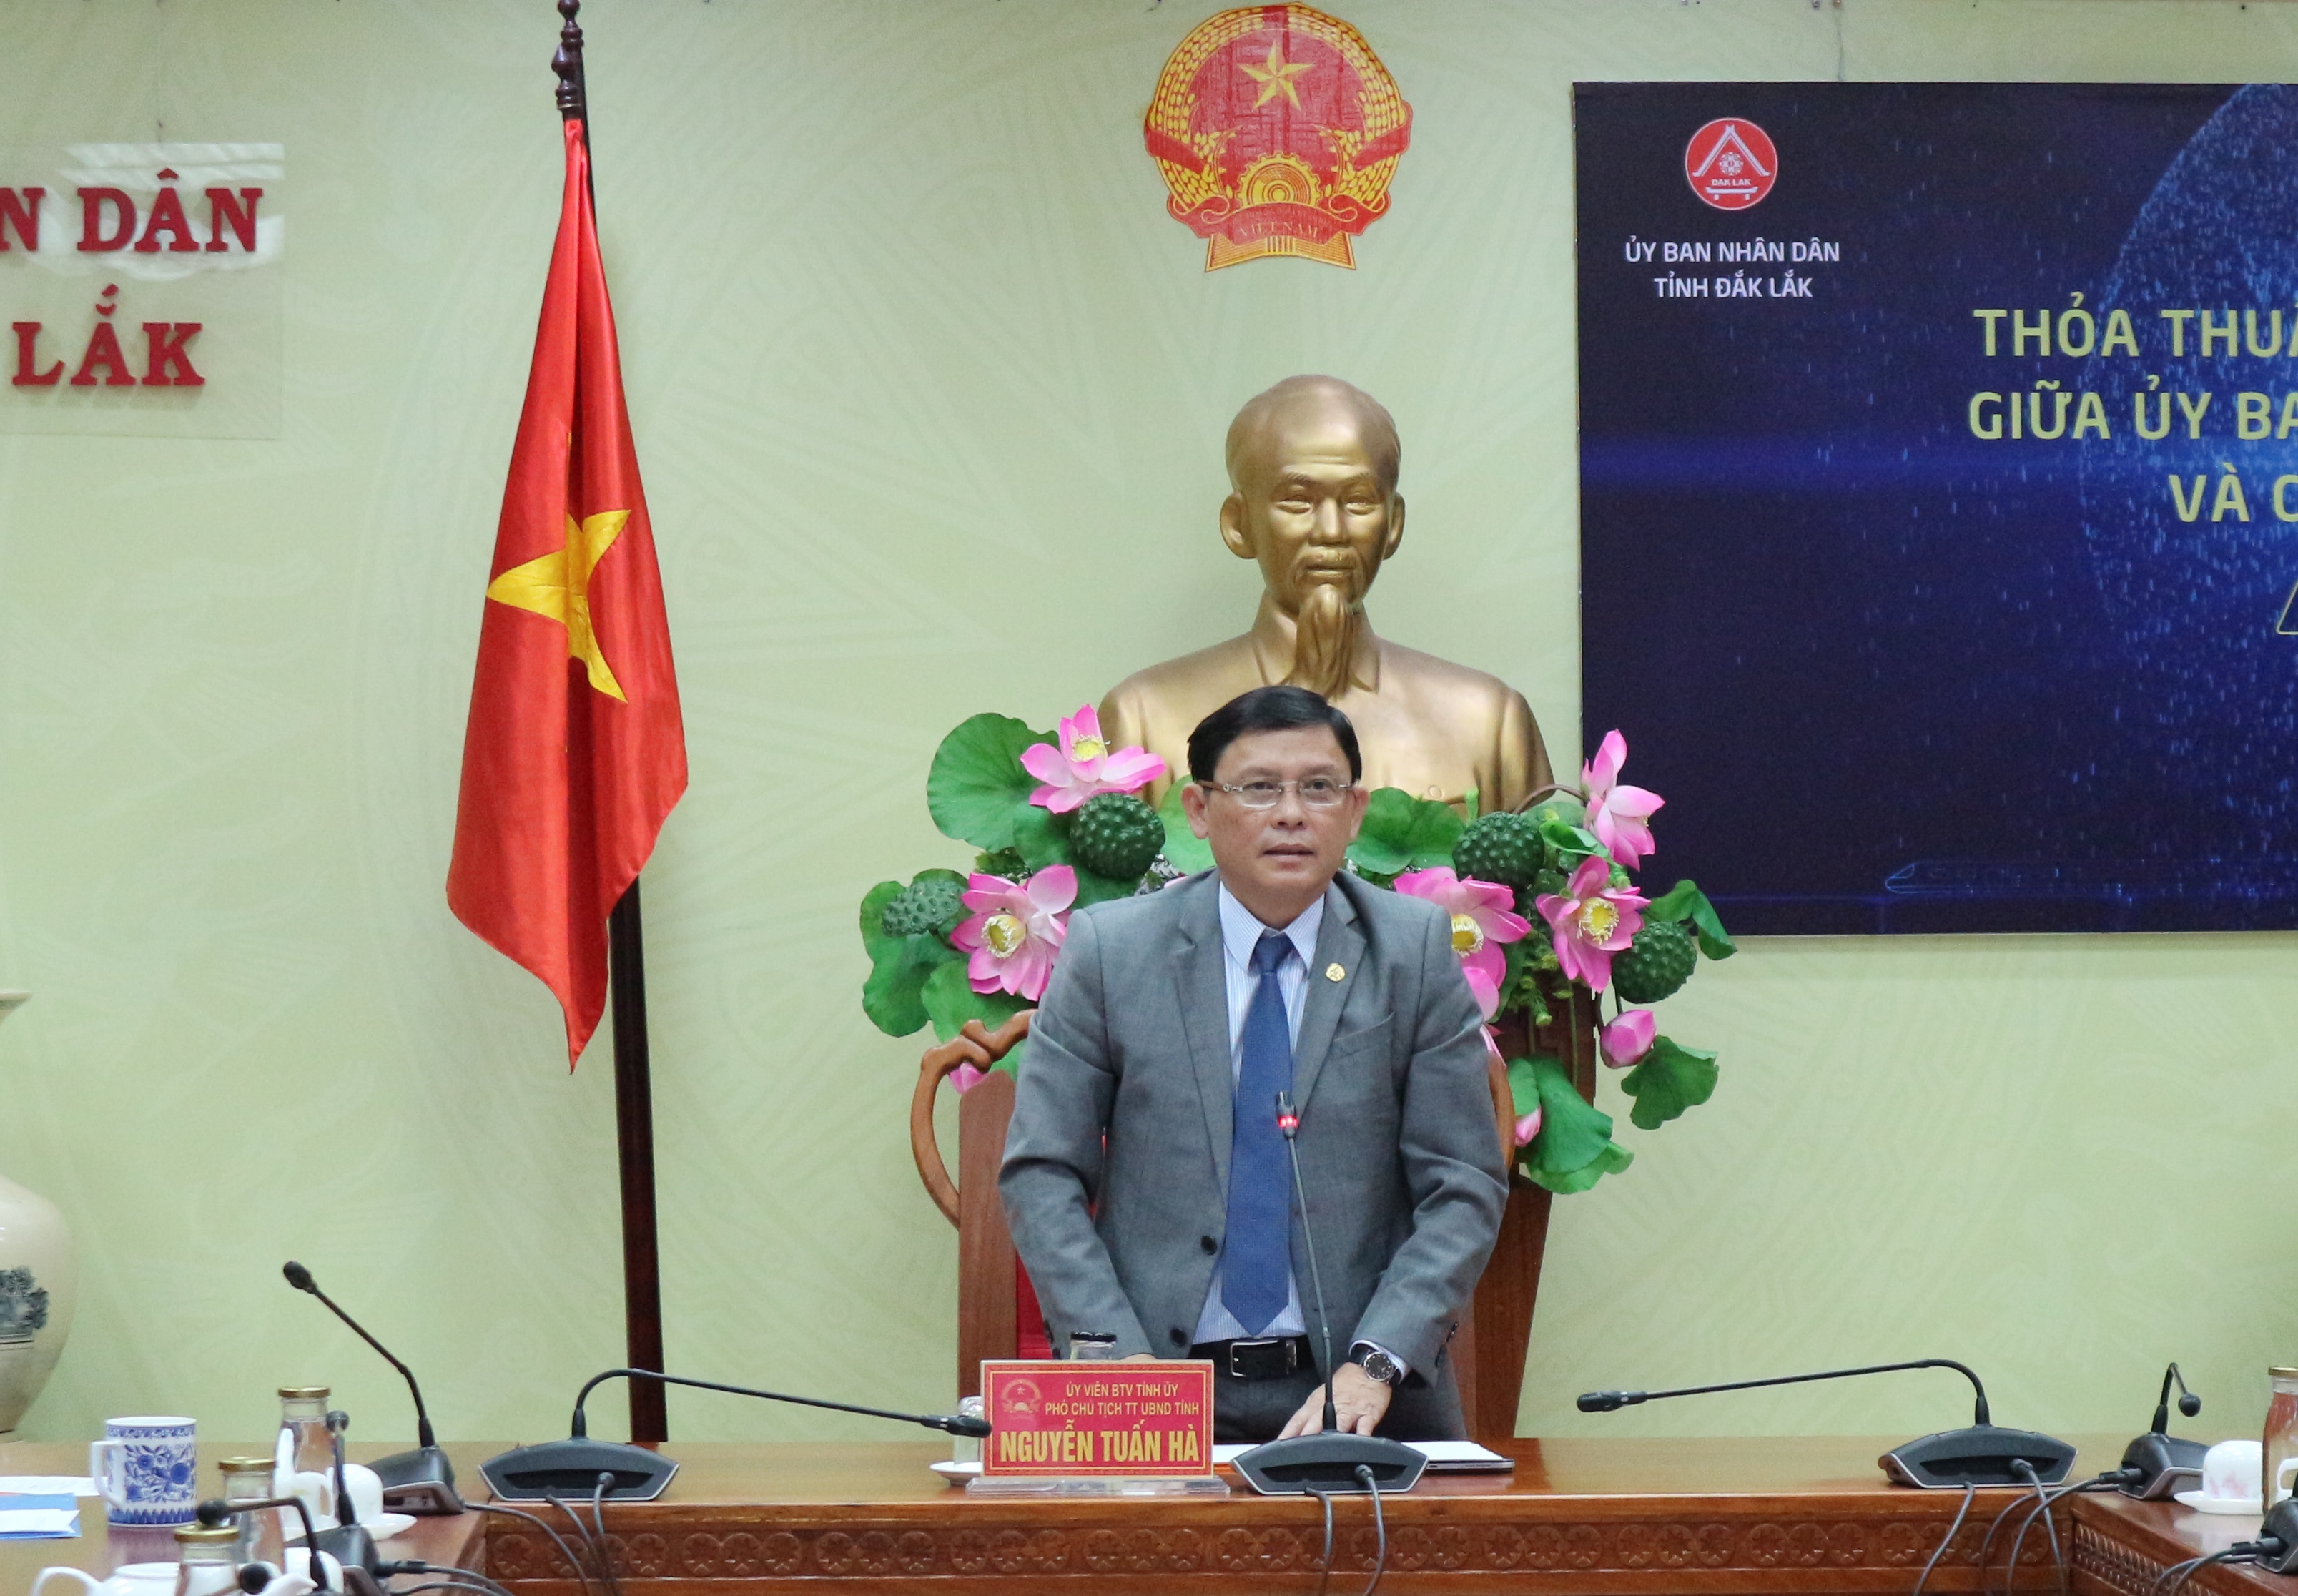 Ký kết Chương trình thỏa thuận hợp tác chuyển đổi số giai đoạn 2022 - 2025 giữa tỉnh Đắk Lắk và Công ty Cổ phần FPT